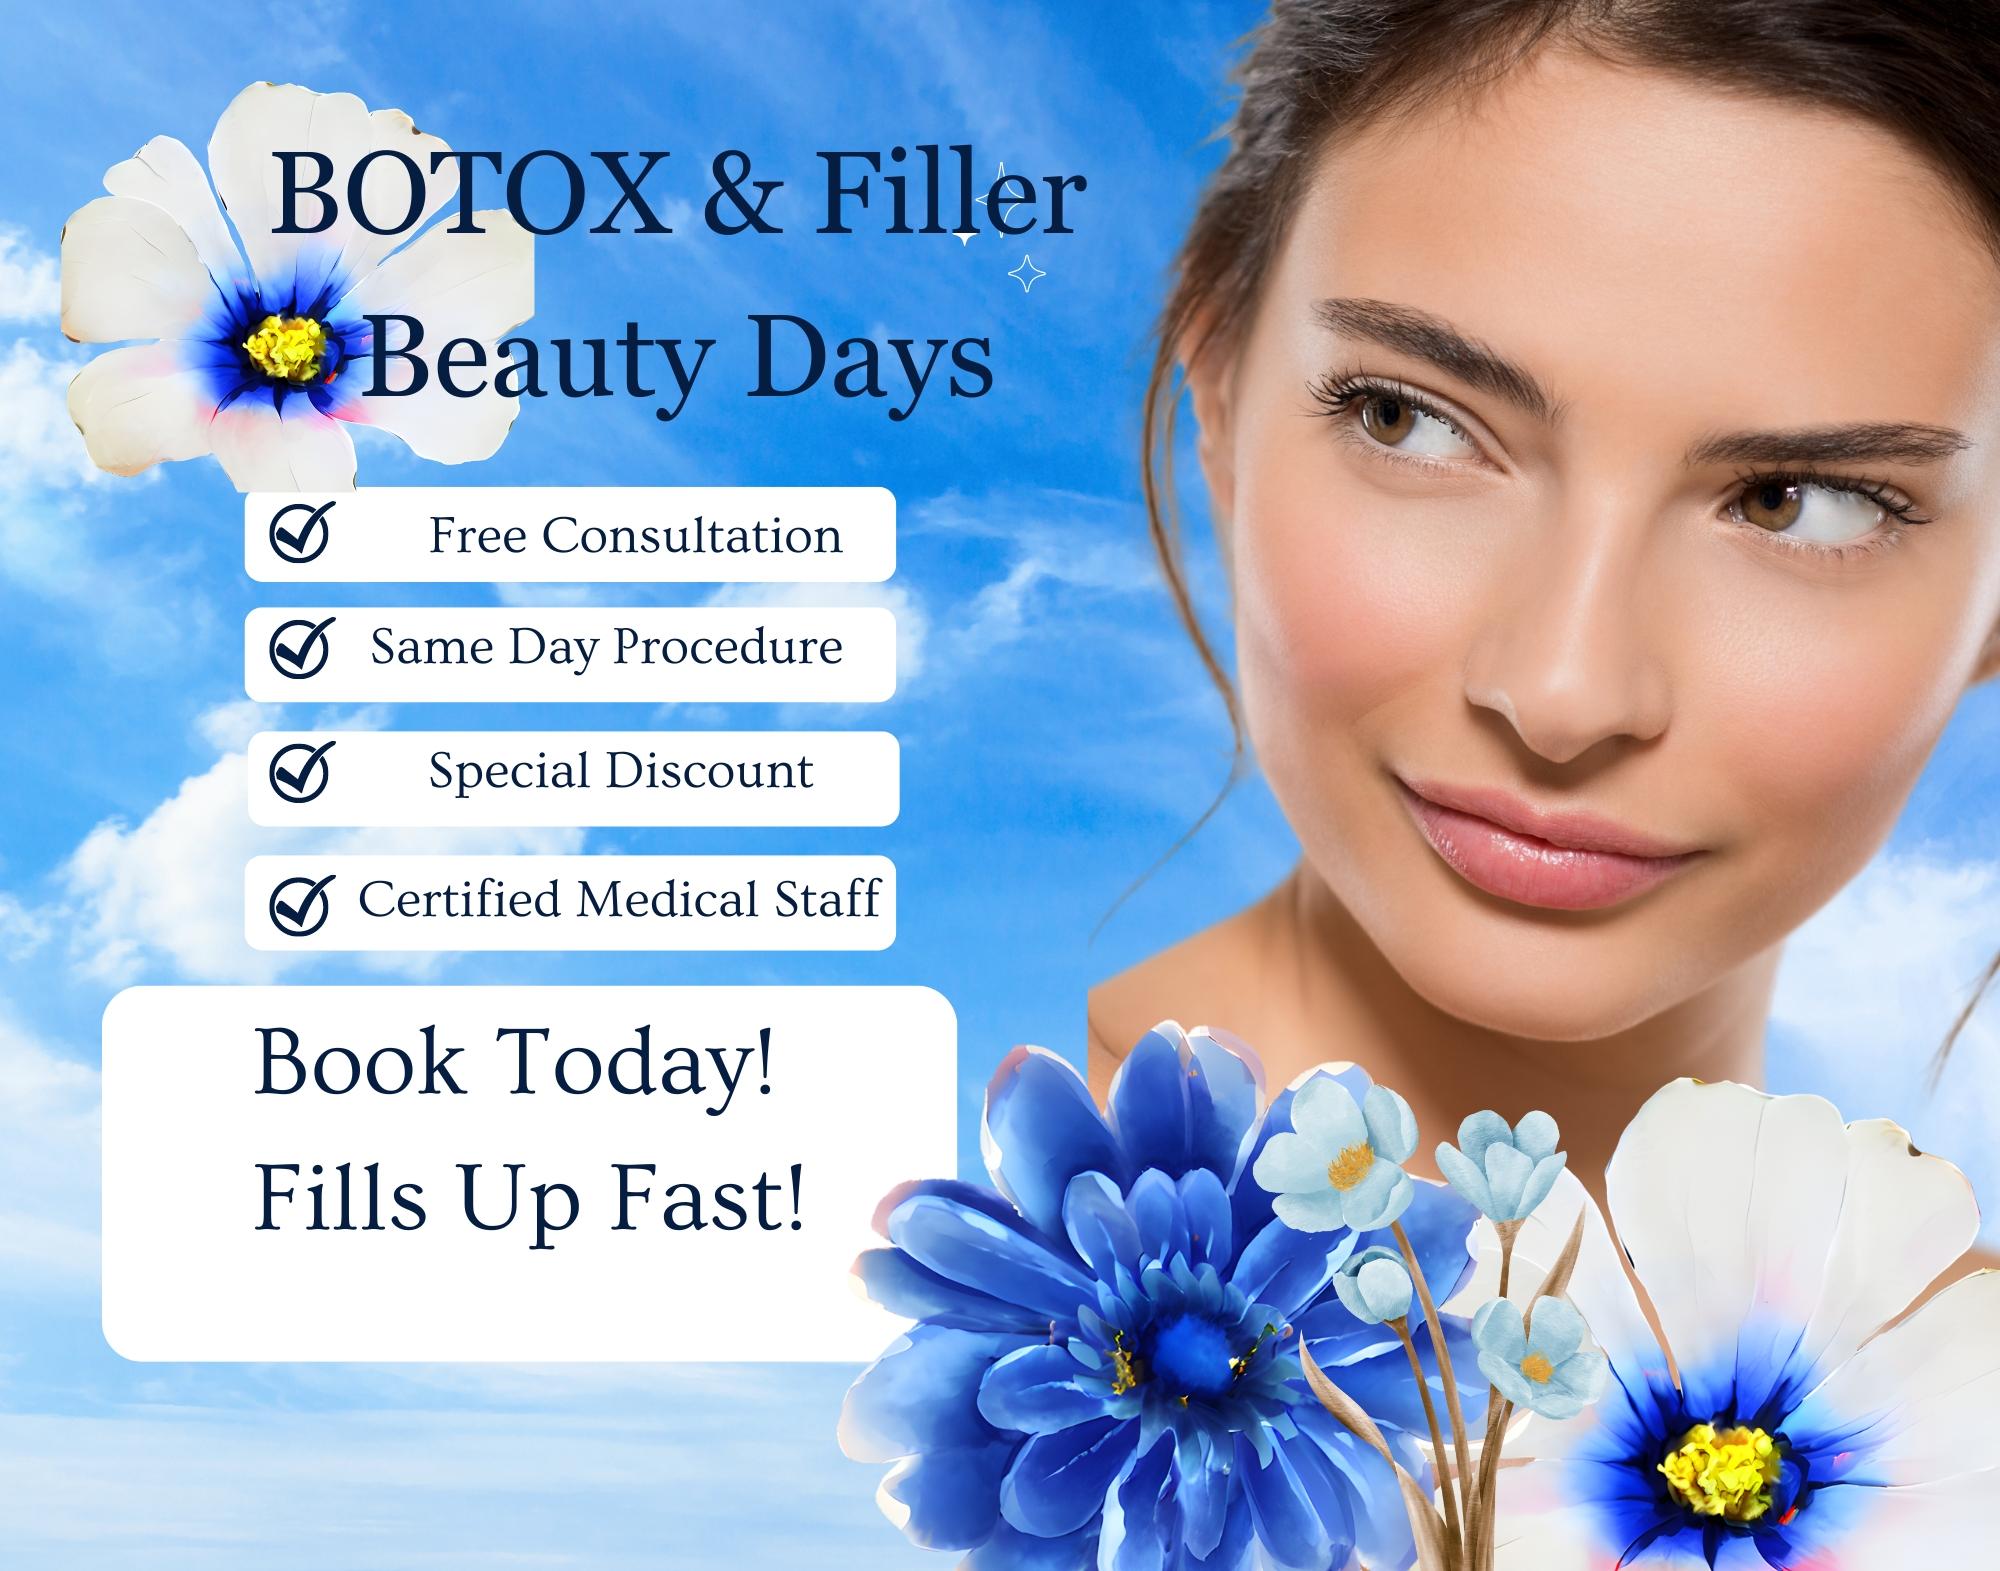 botox & filler days (14 x 11 in)